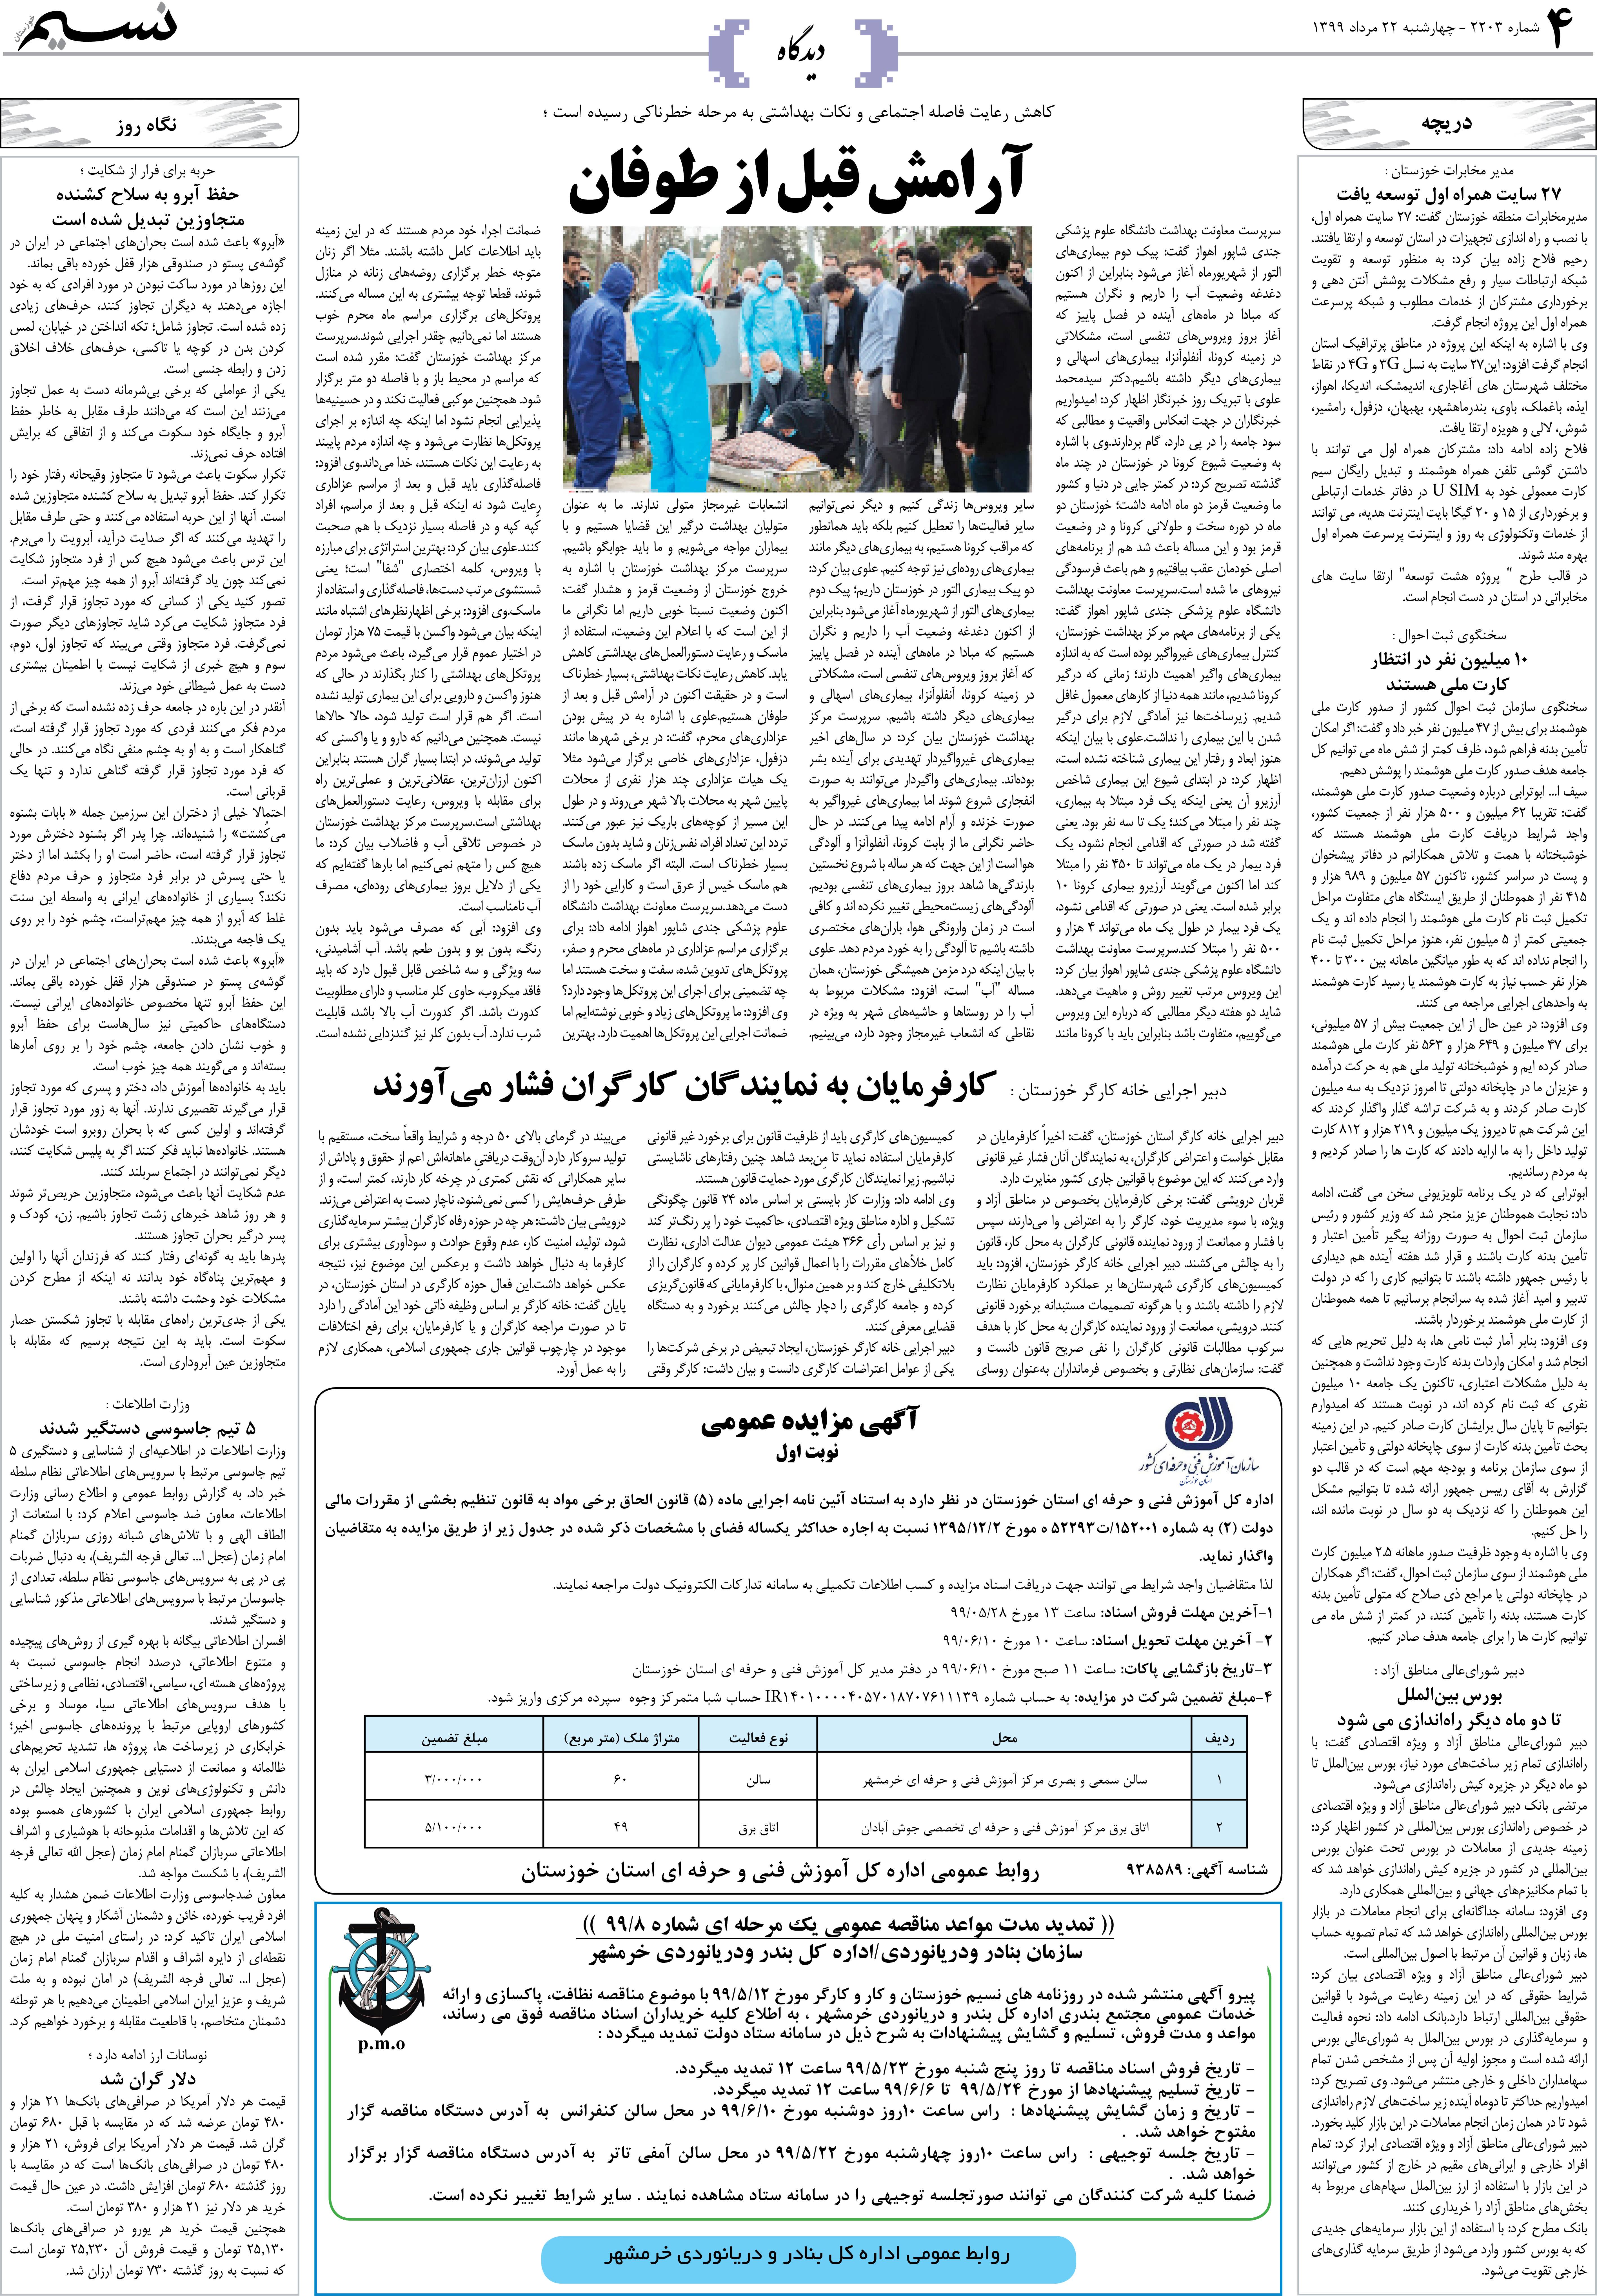 صفحه دیدگاه روزنامه نسیم شماره 2203